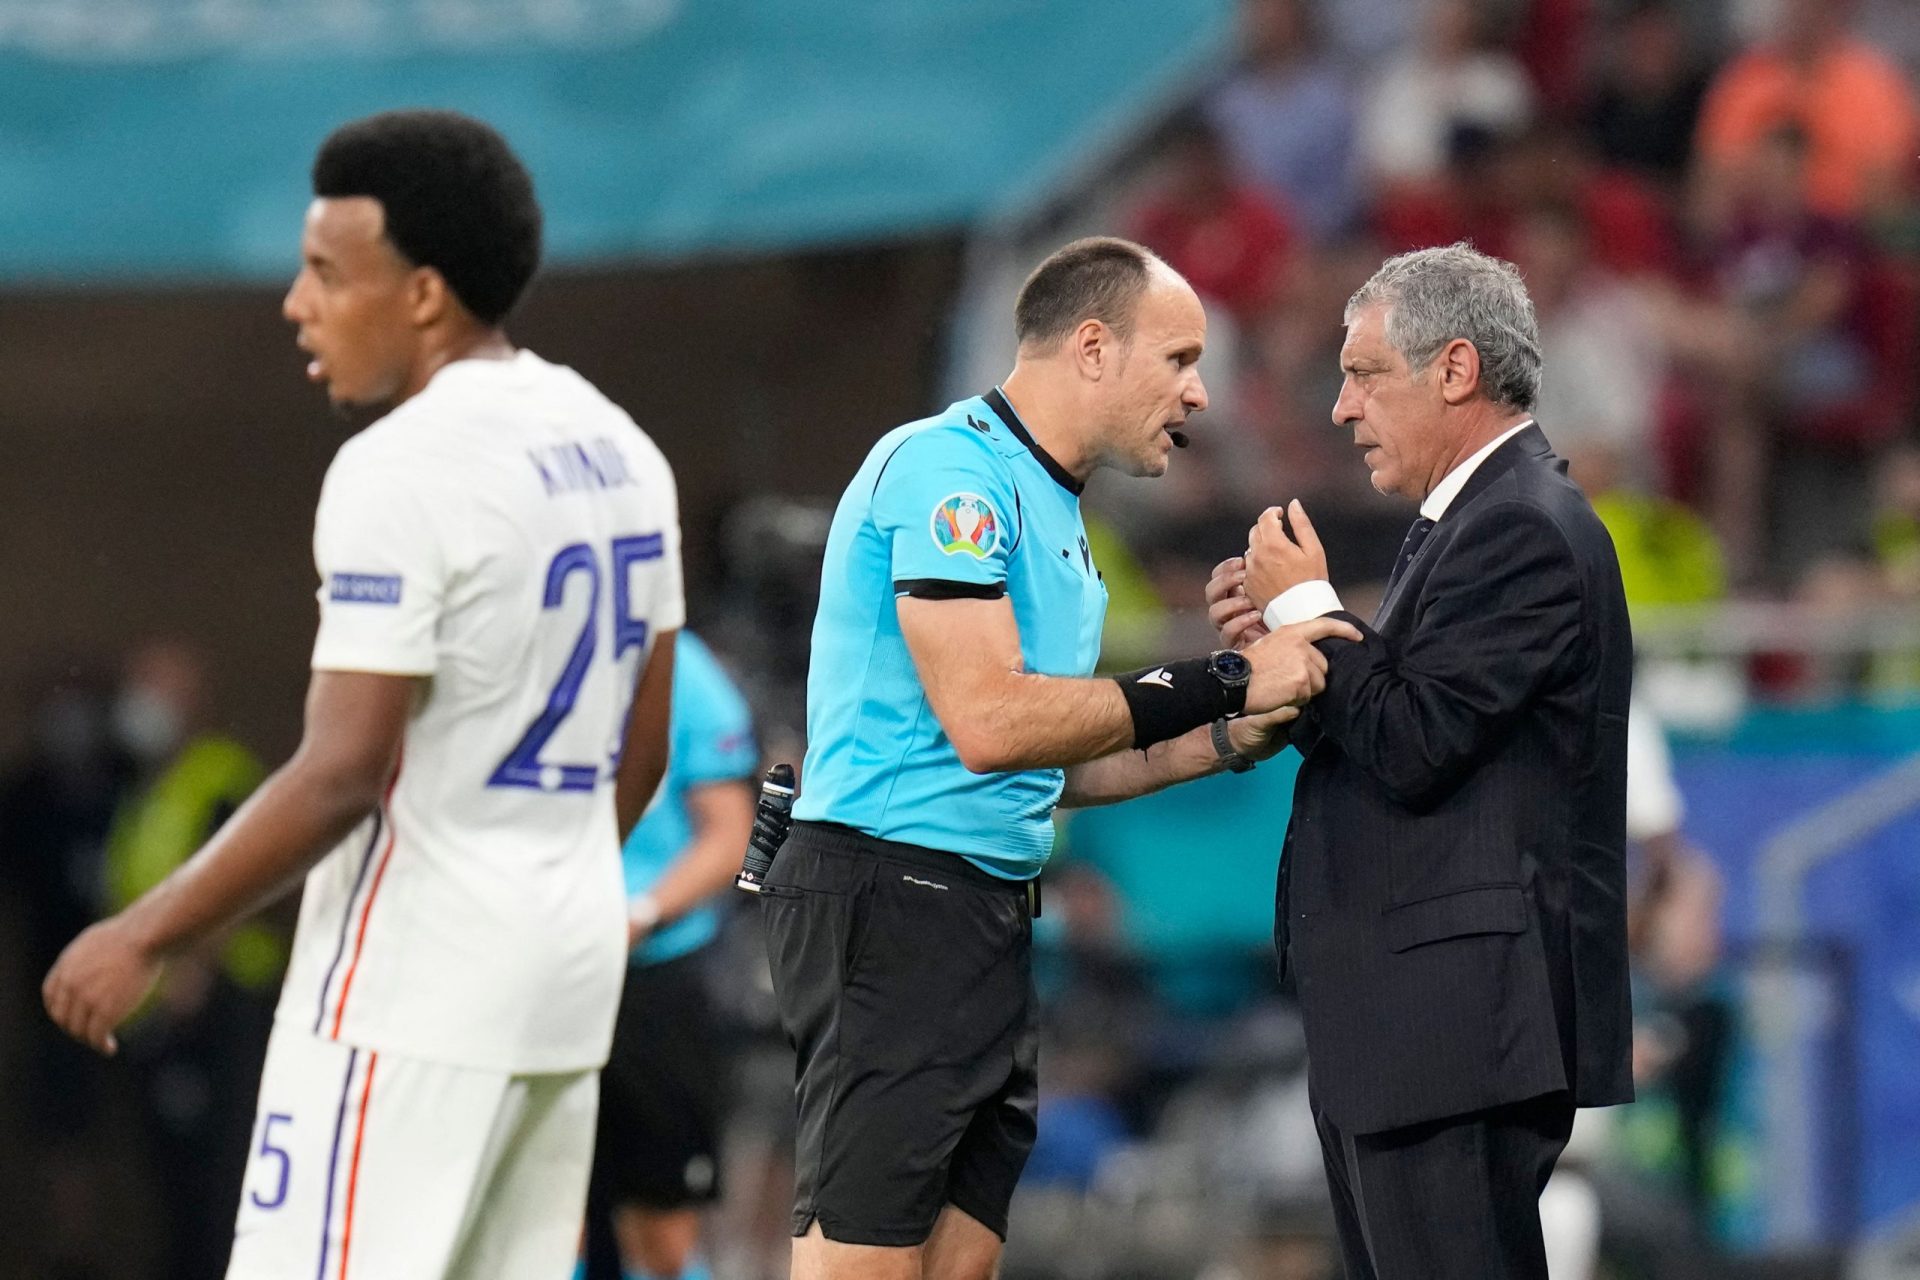 Penálti polémico contra Portugal no jogo com França afasta árbitro do resto do Euro 2020